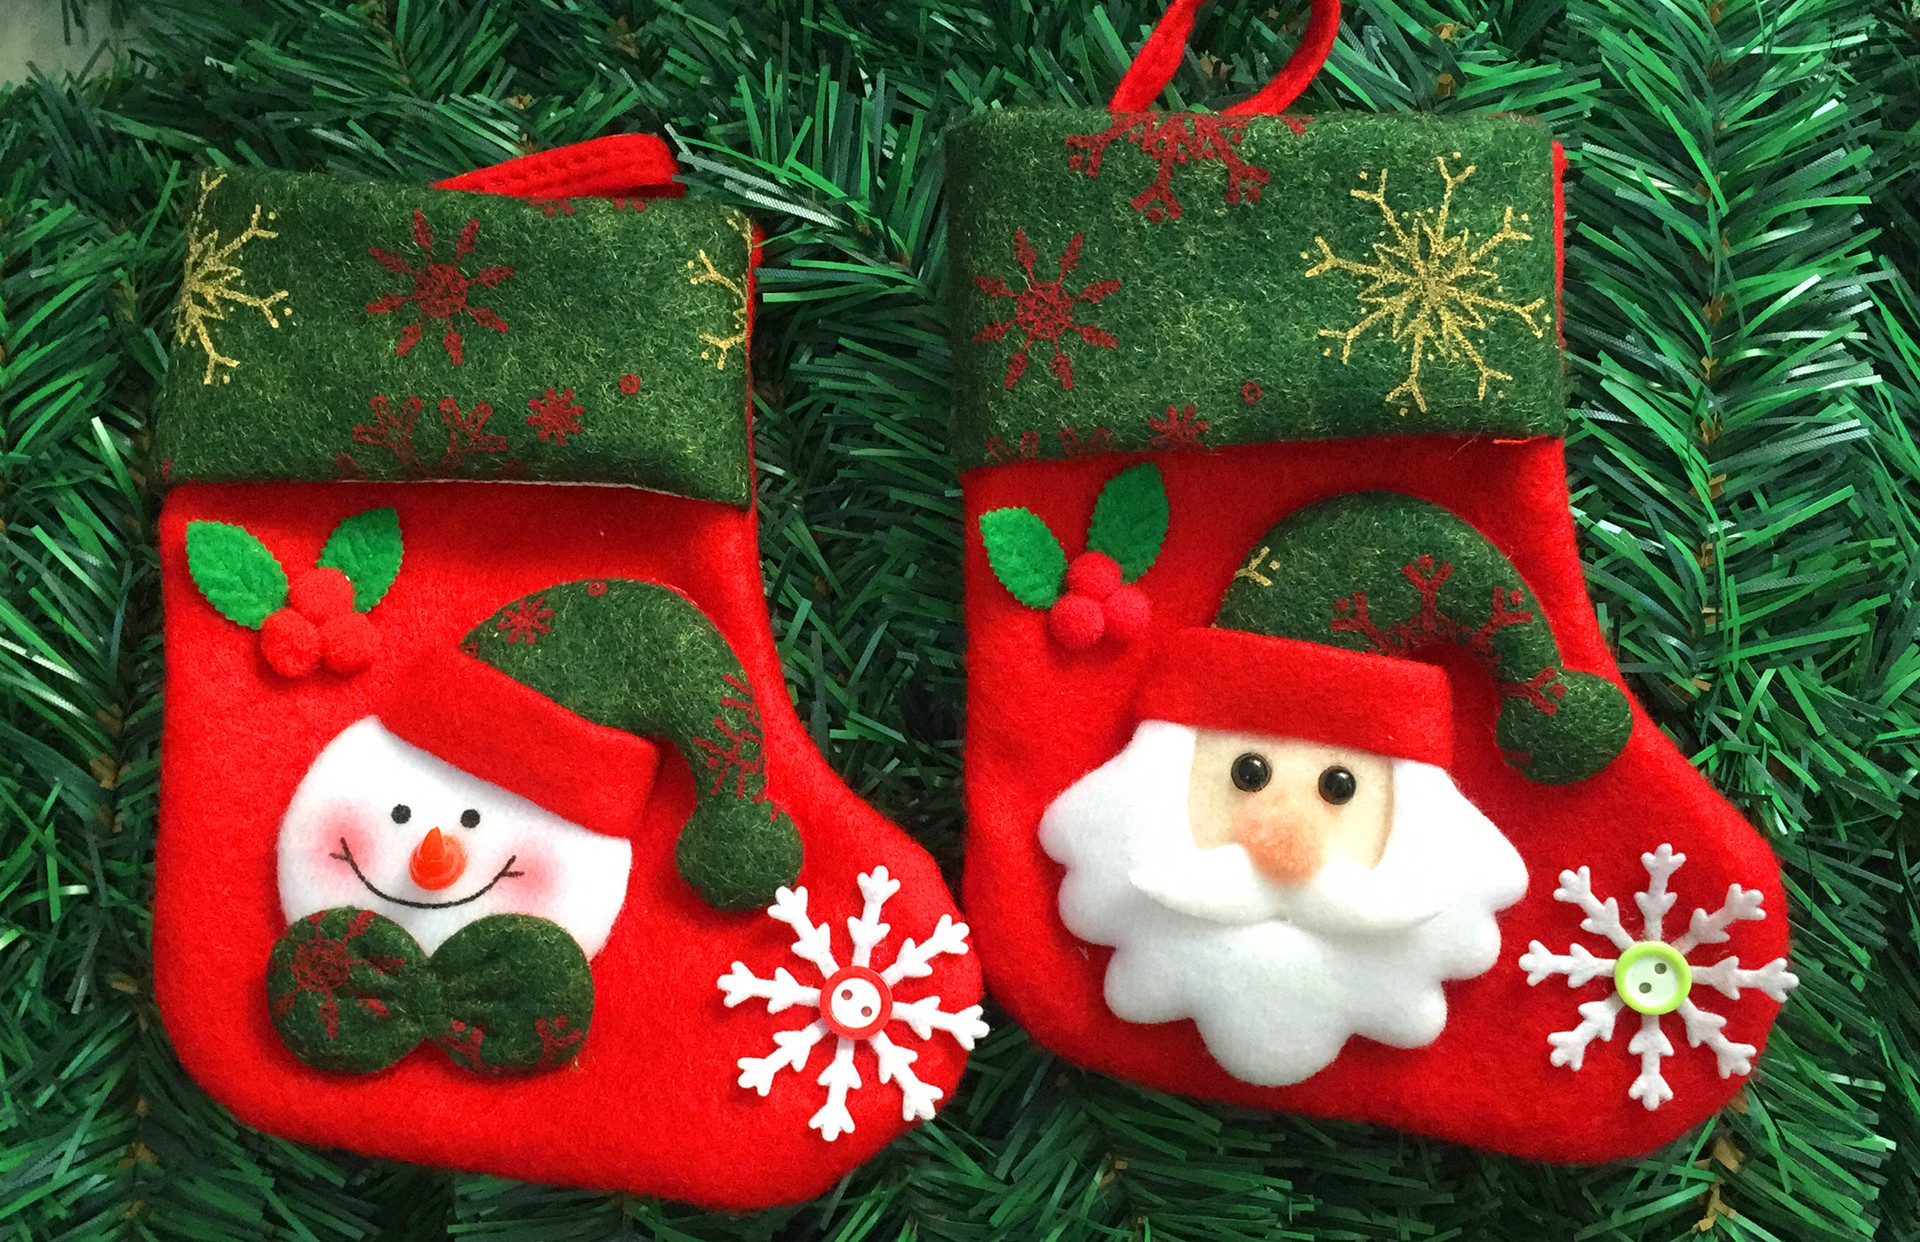 (12入)小號聖誕襪 聖誕襪 聖誕糖果襪 聖誕禮品袋1